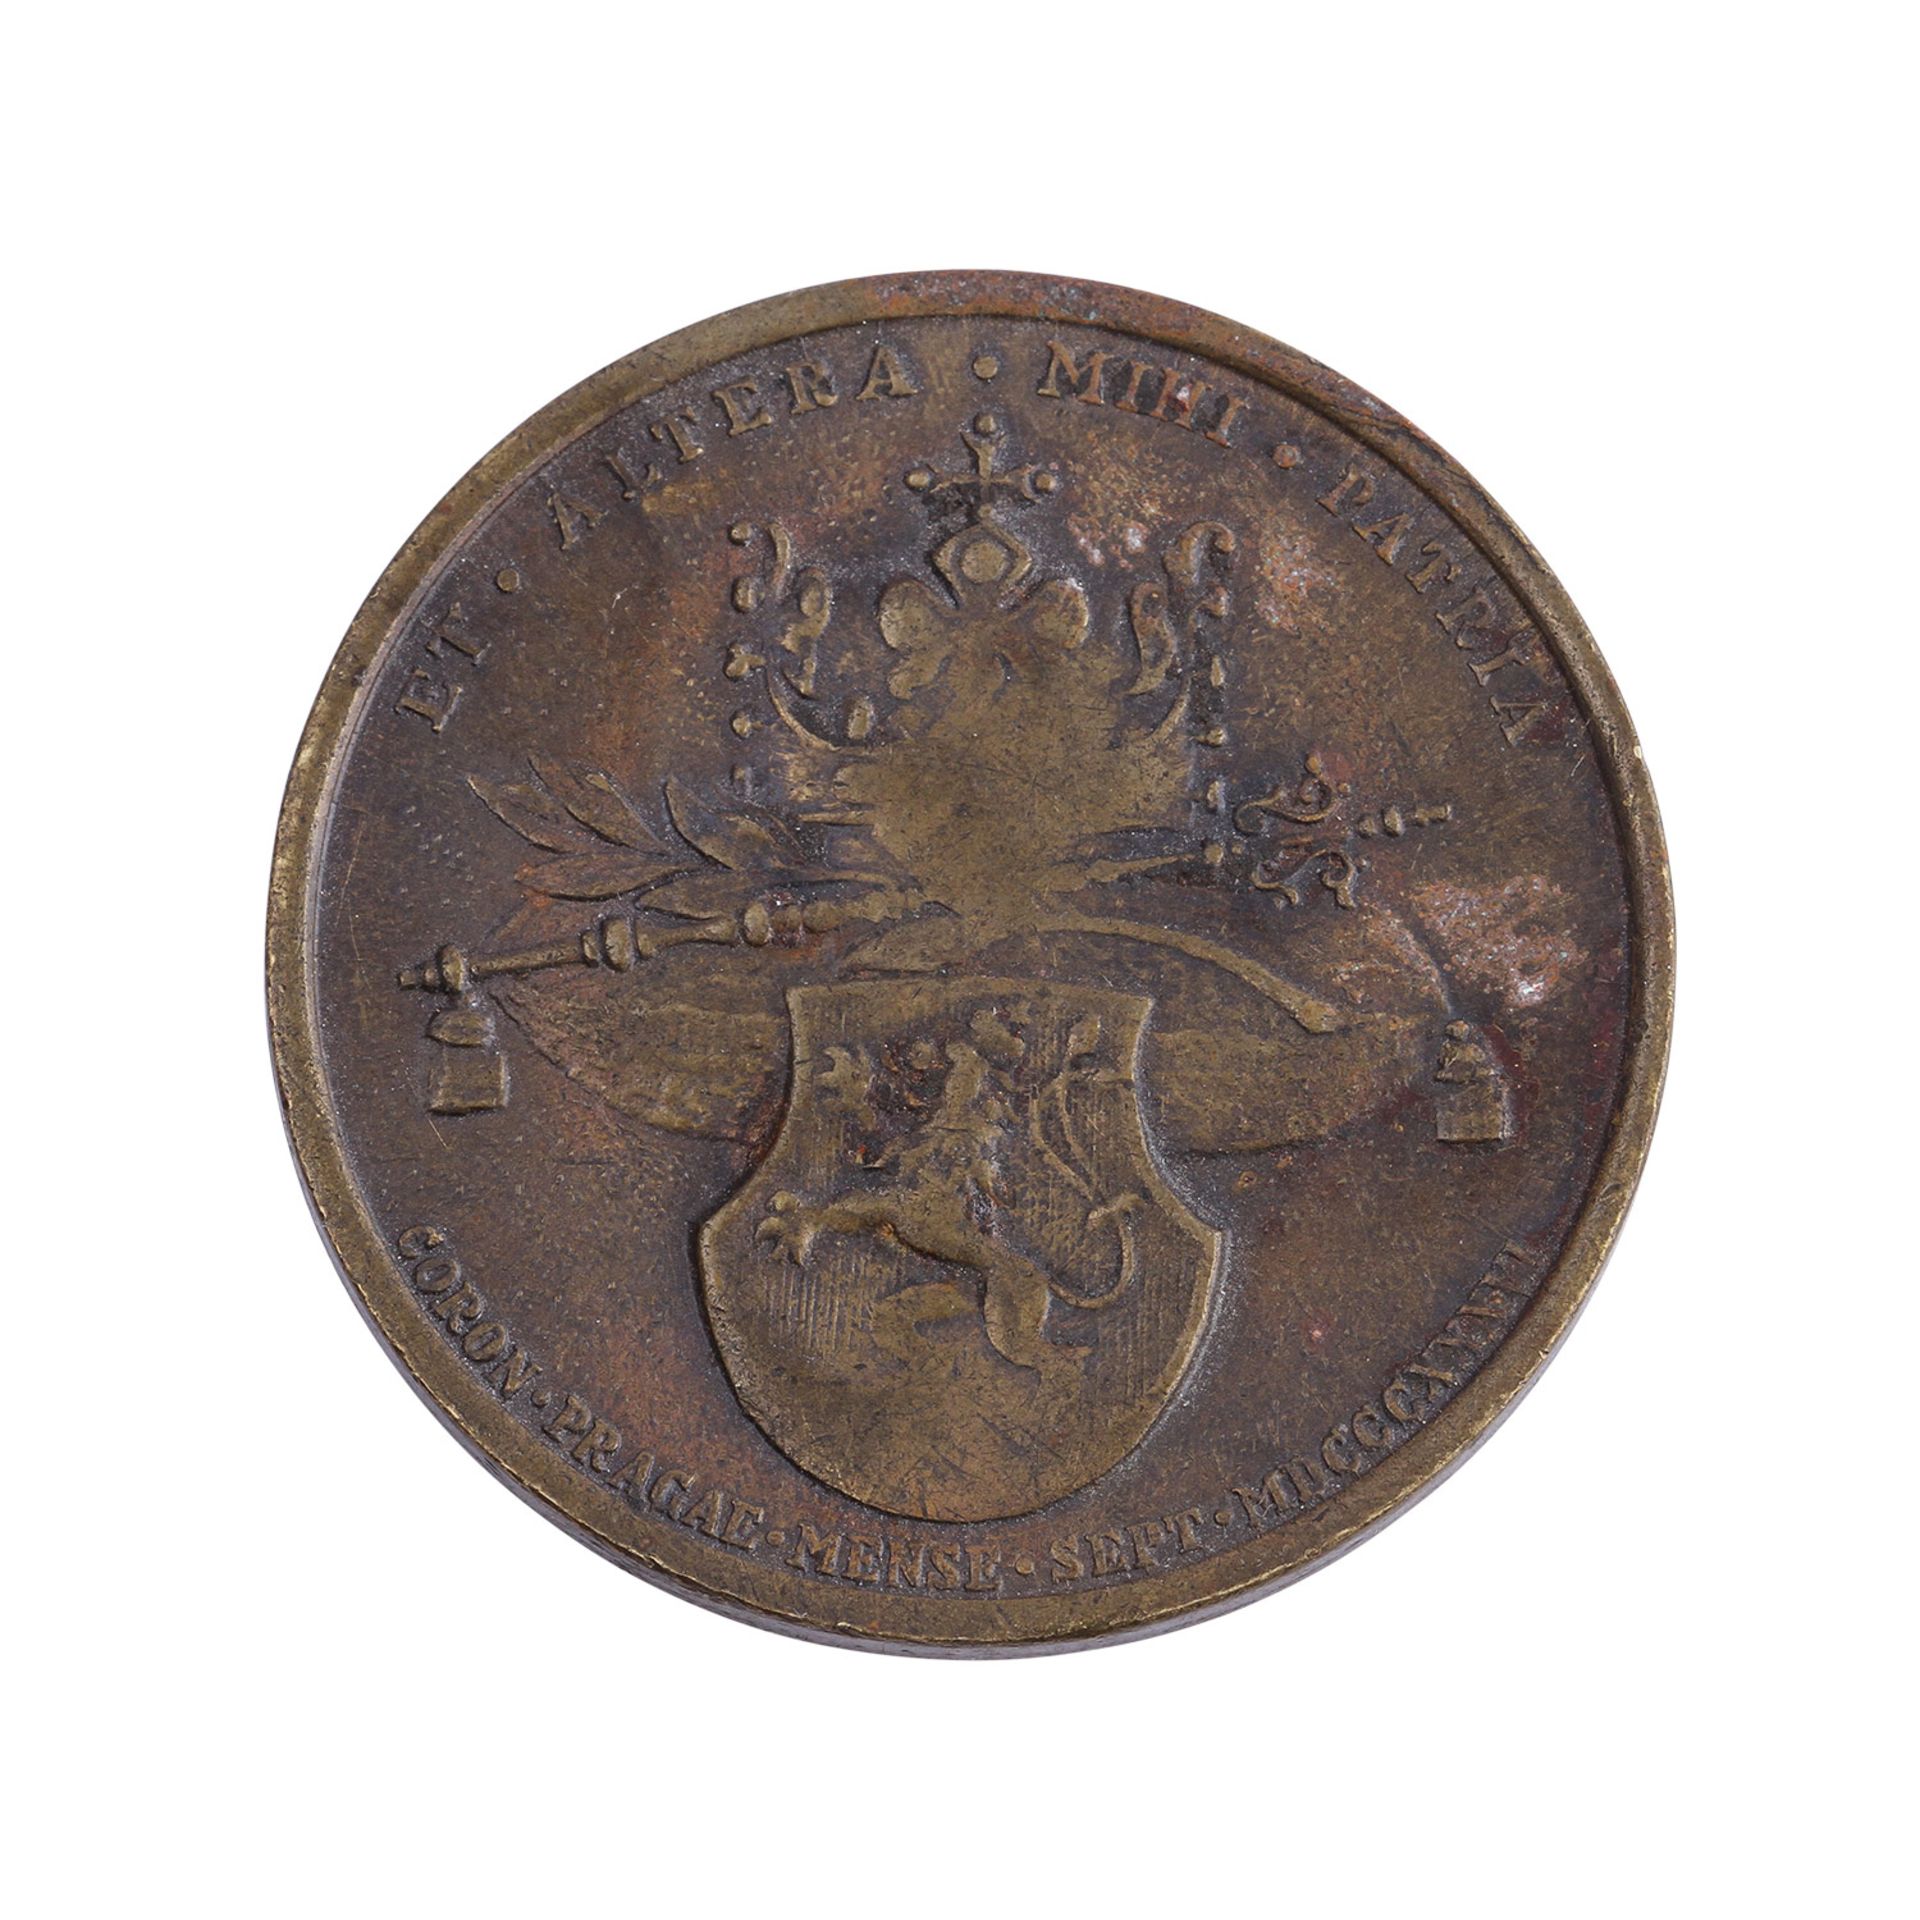 RDR Bronzemedaille - Medaille auf die Krönung von Maria Anna Augustaund Ferdinand I. 1836 in Prag, - Bild 2 aus 2